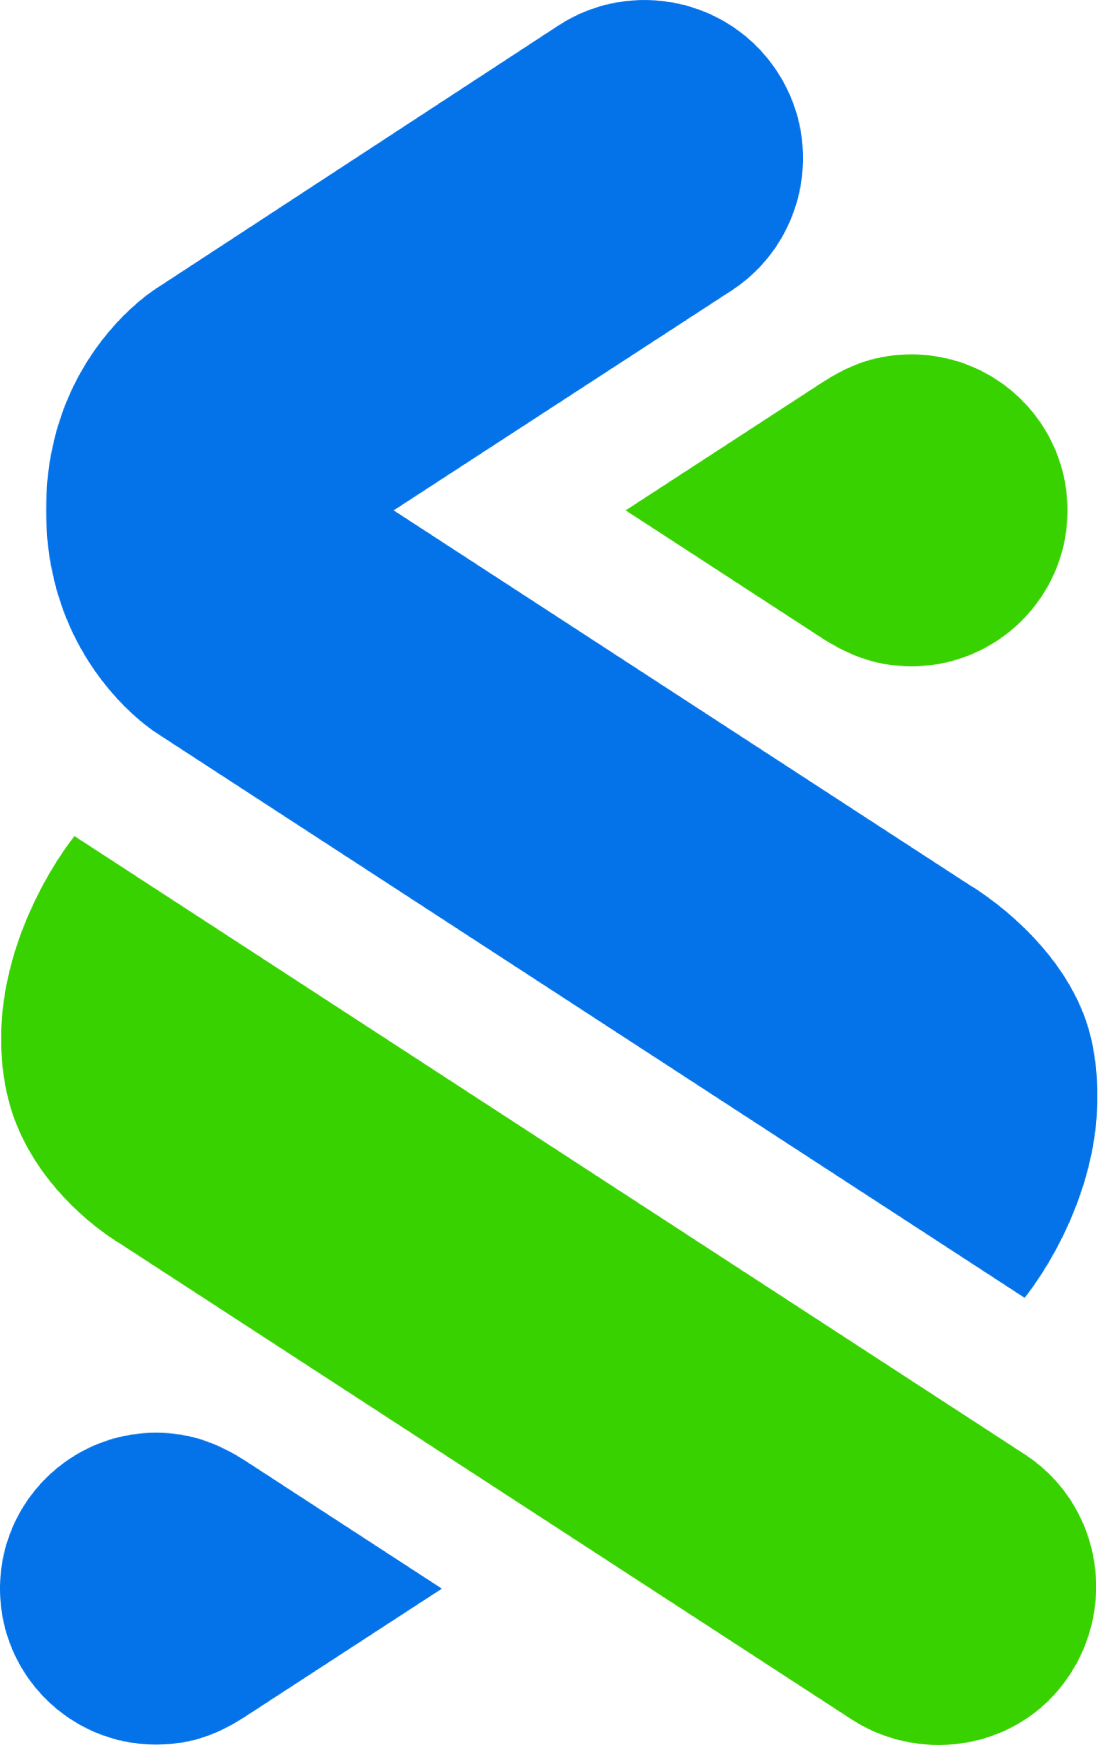 Standard Chartered logo (PNG transparent)